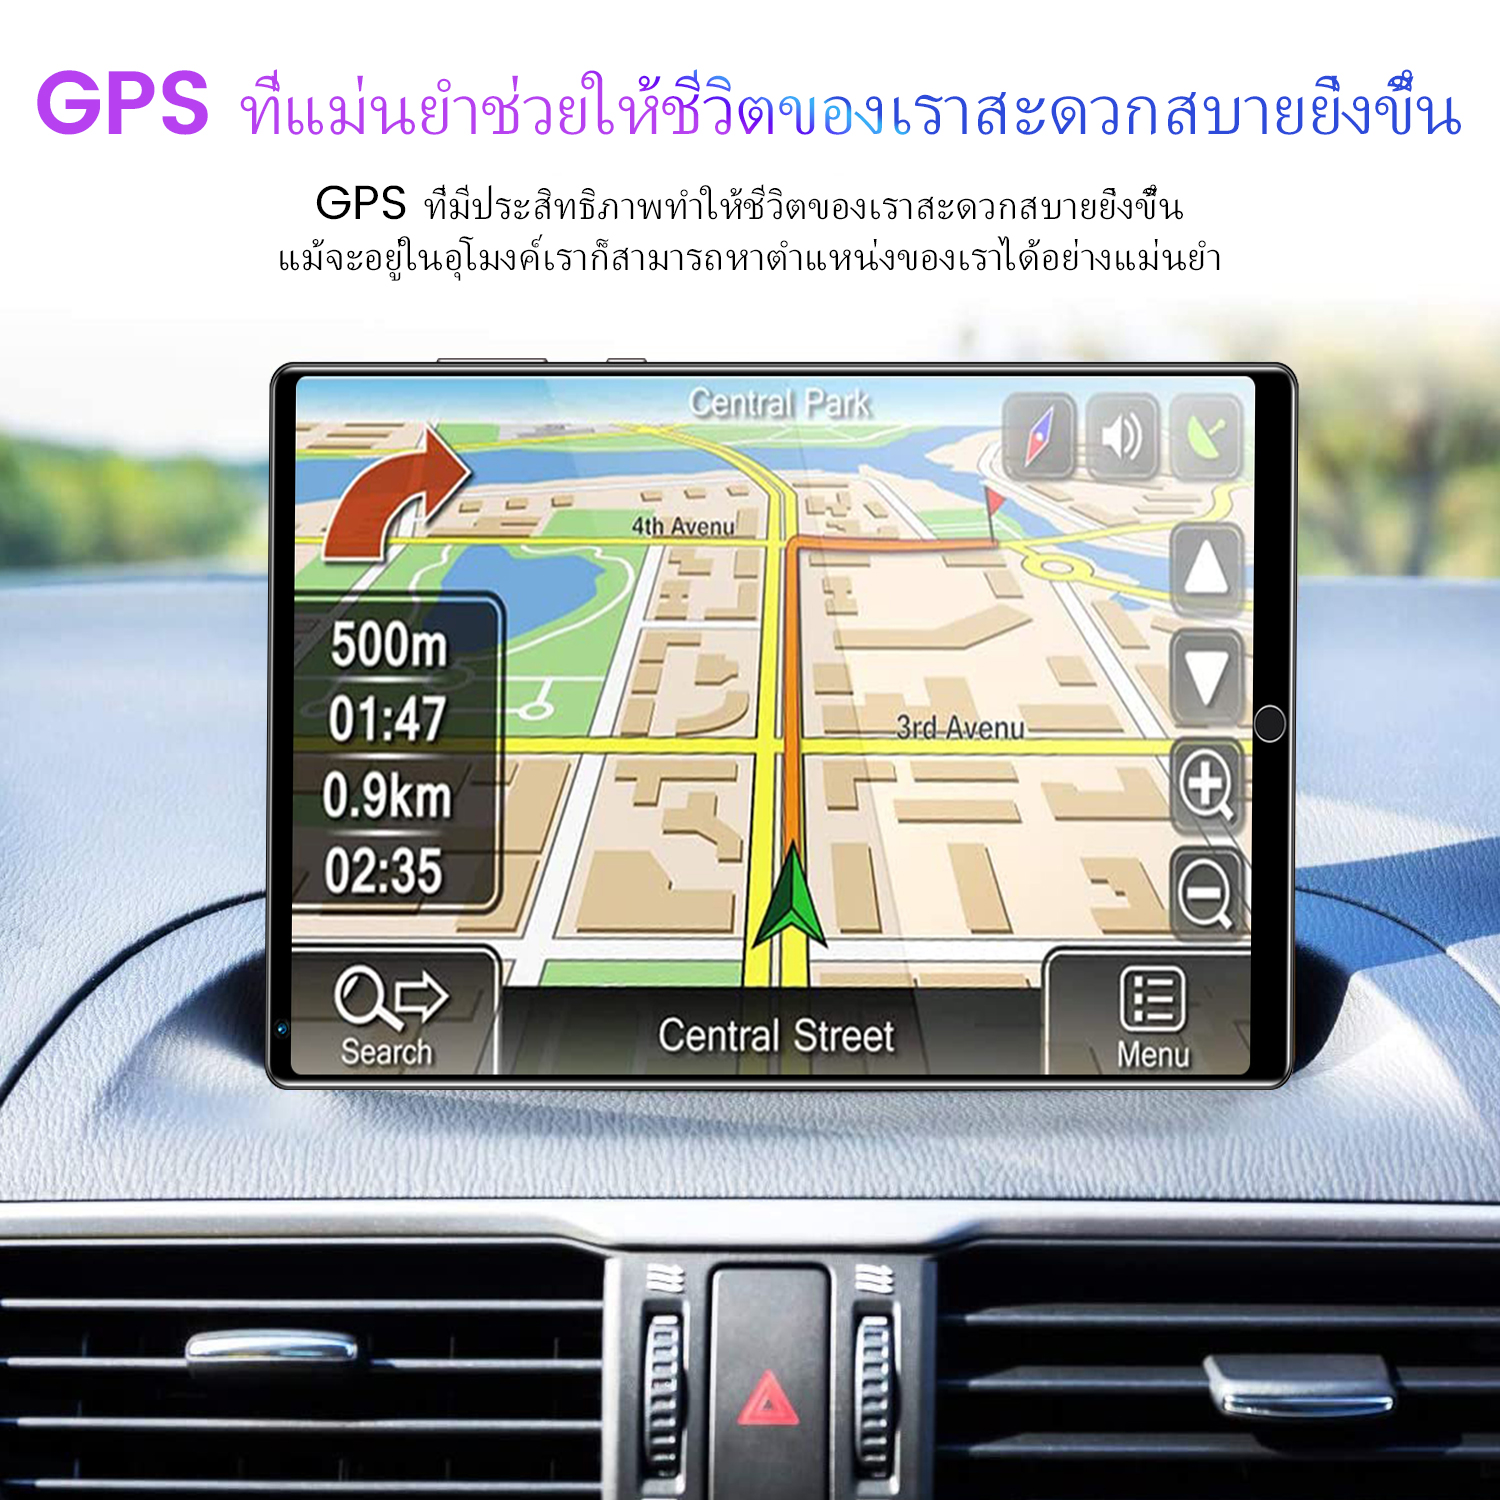 มุมมองเพิ่มเติมของสินค้า Sansumg Tablet แท็บเล็ตโทรได้ 4g/5G แท็บเล็ตถูกๆ Screen Dual Sim 5G Andorid Full HD Tablet จัดส่งฟรี รองรับภาษาไทย หน่วยประมวลผล แท็บเล็ตสำหรับเล่นเกมราคาถูก RAM12G ROM512G ไอเเพ็ด แท็บเล็ต แท็บเล็ตราคาถูกๆ แท็บเล็ตราคาถูกรุ่นล่าสุด แทบเล็ตราคาถูก